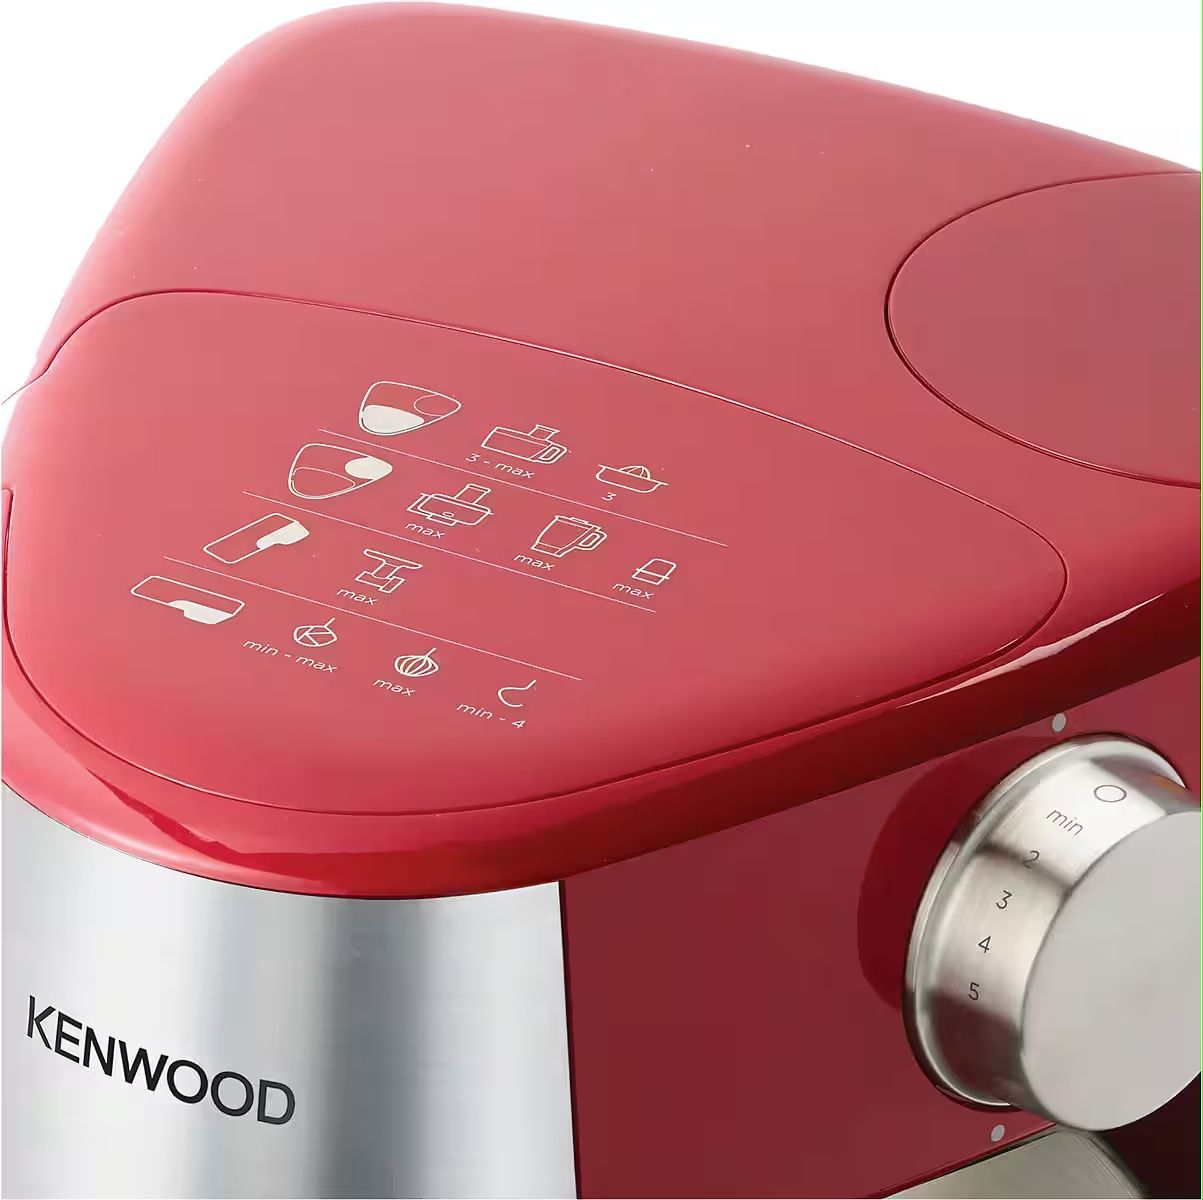 Нов кухненски робот KENWOOD Prospero+ KHC29.P0RD, 1000 W, купа 4.3 l